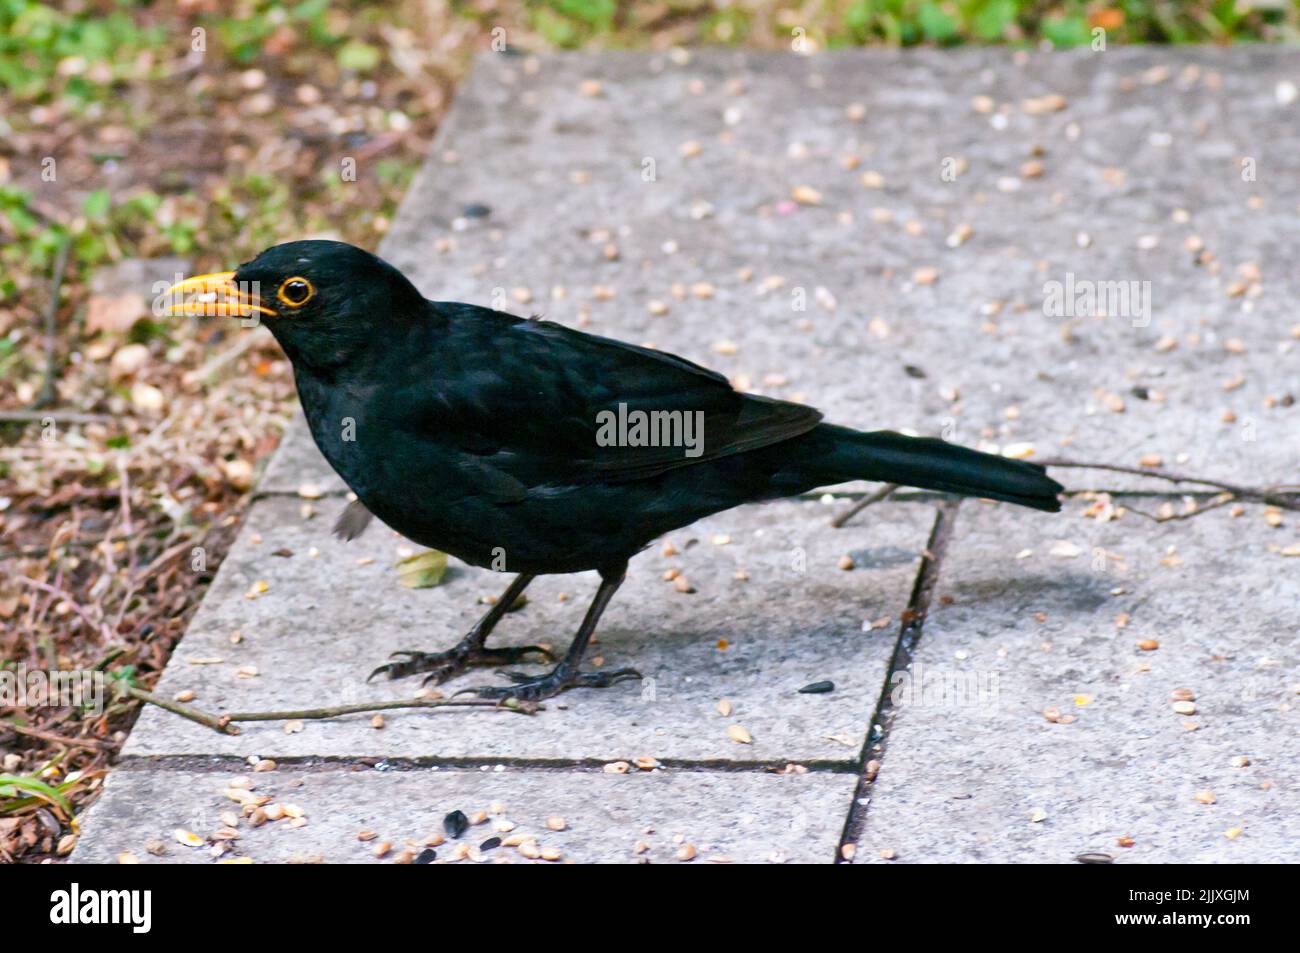 Vue latérale d'Un oiseau noir de Blackbird, Turdus Merula debout sur le sol Banque D'Images